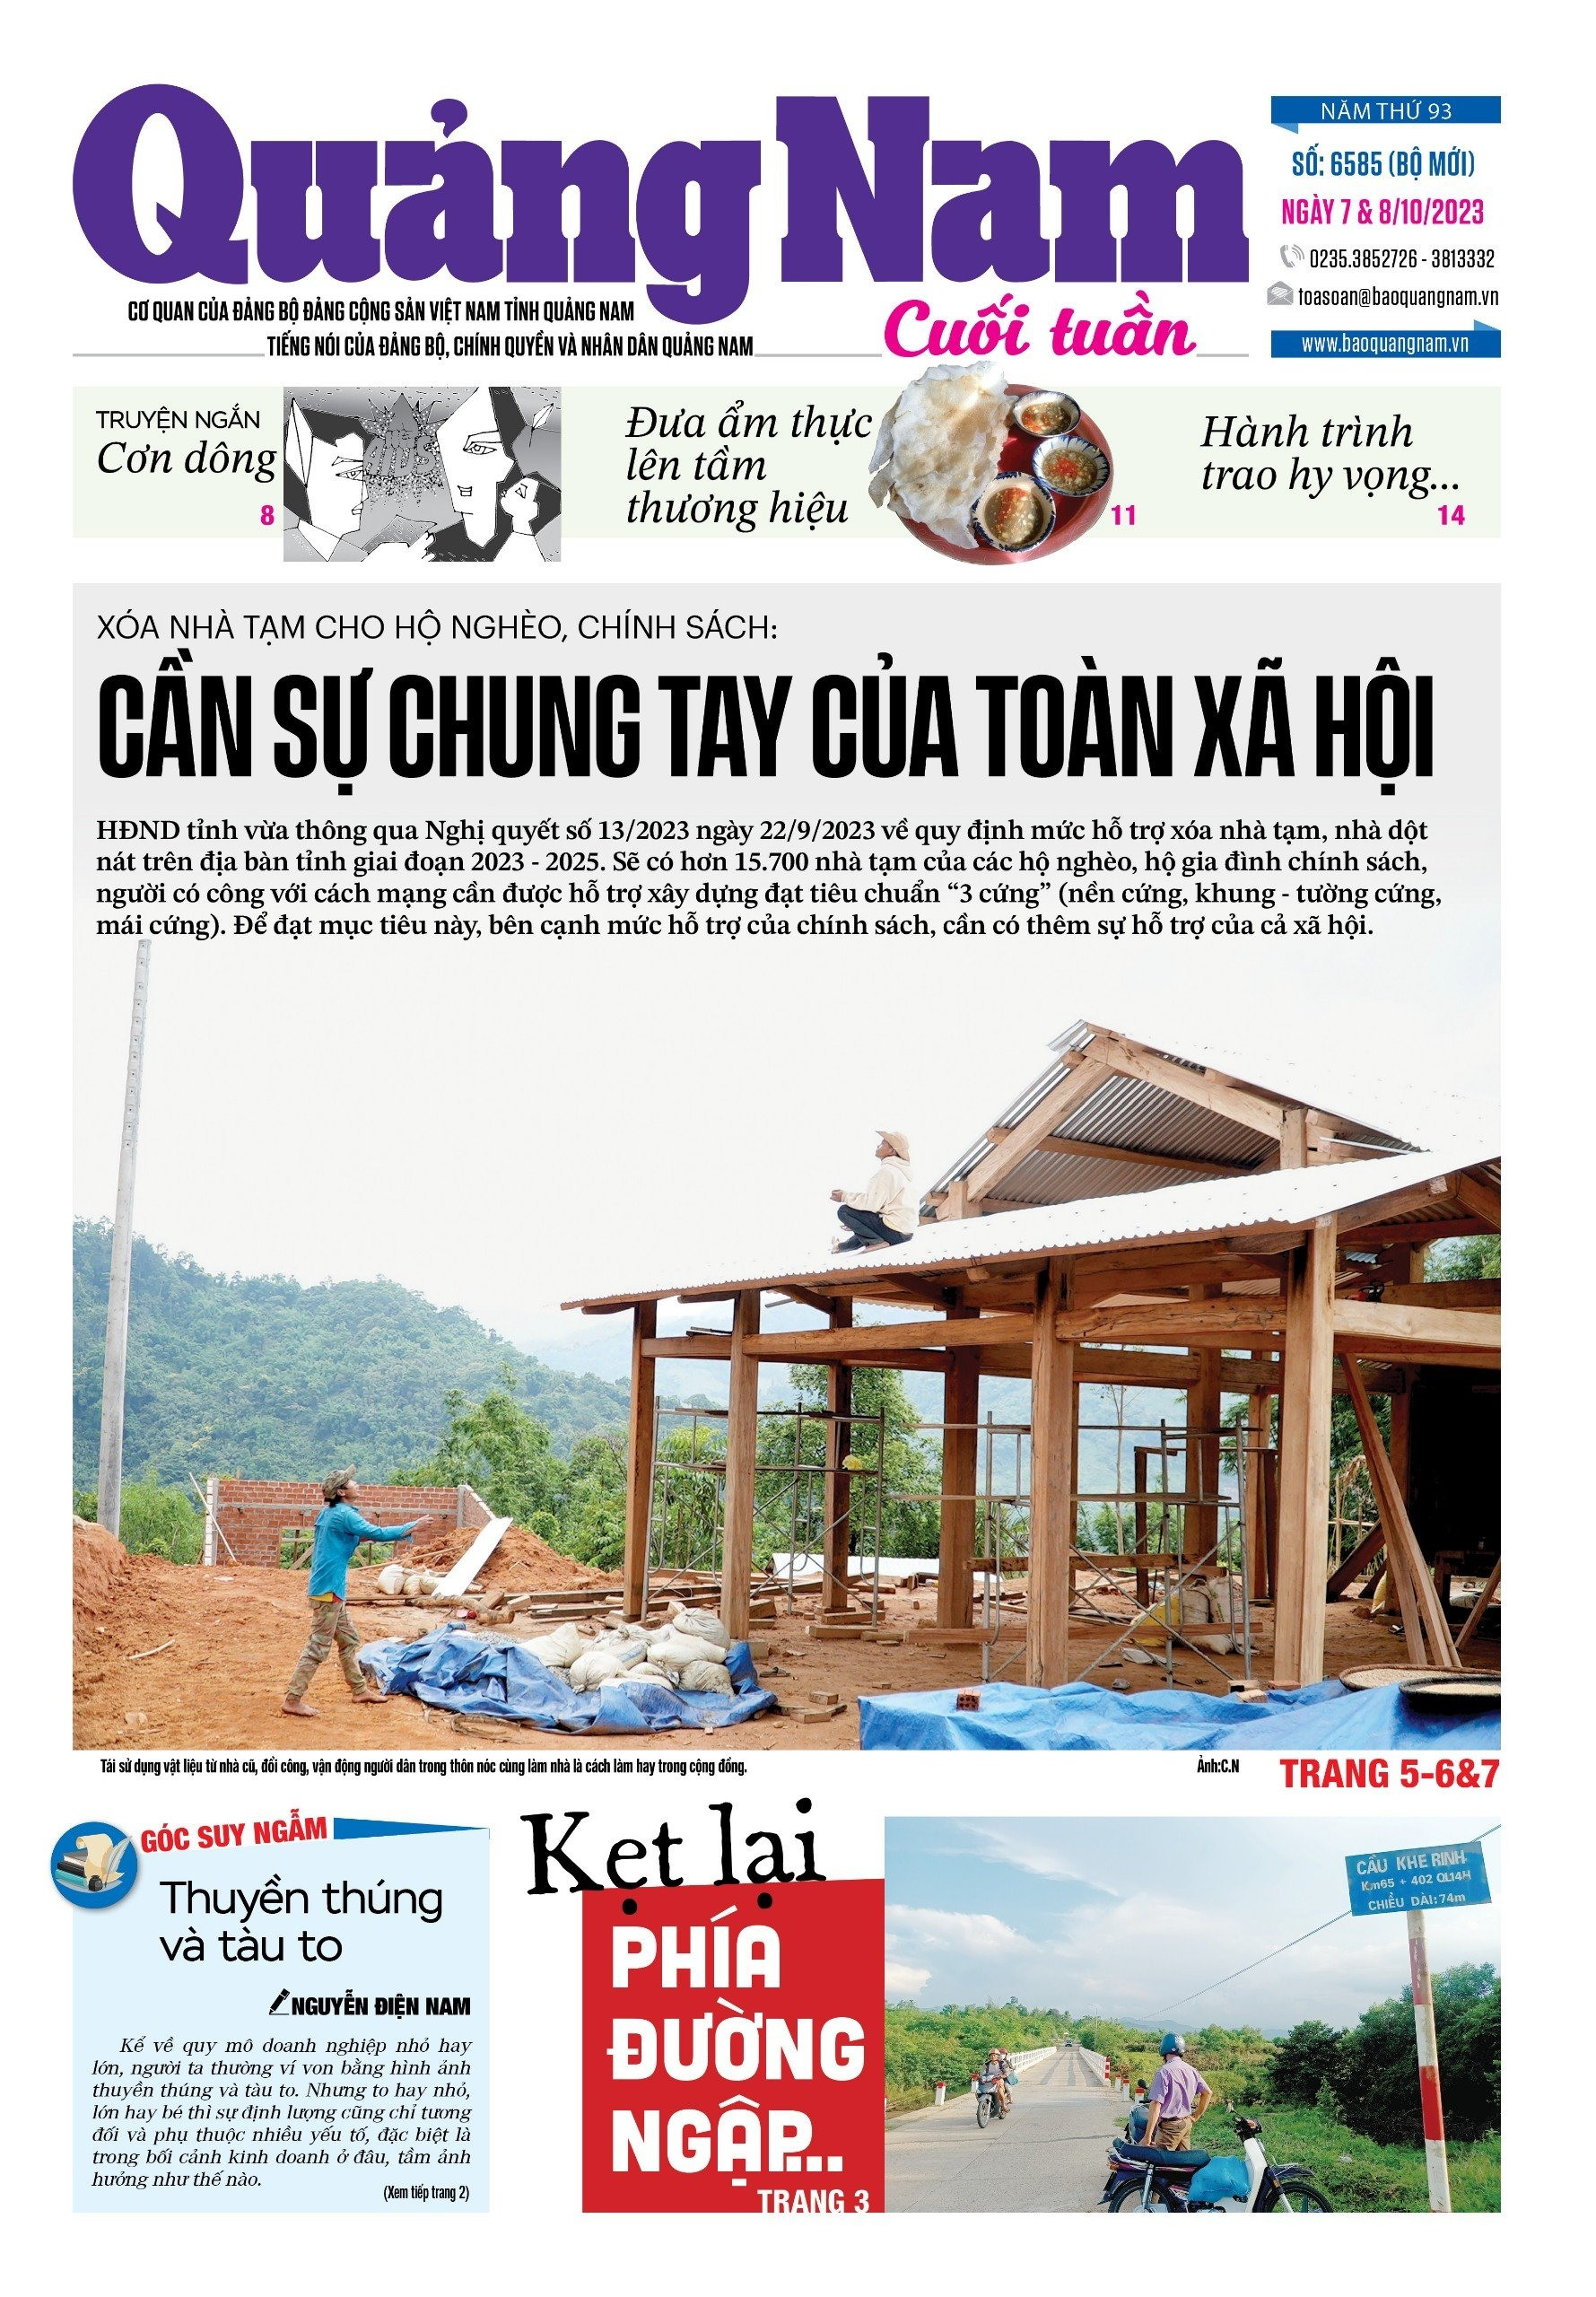 Trang 1 tờ Quảng Nam cuối tuần (7&8/10).